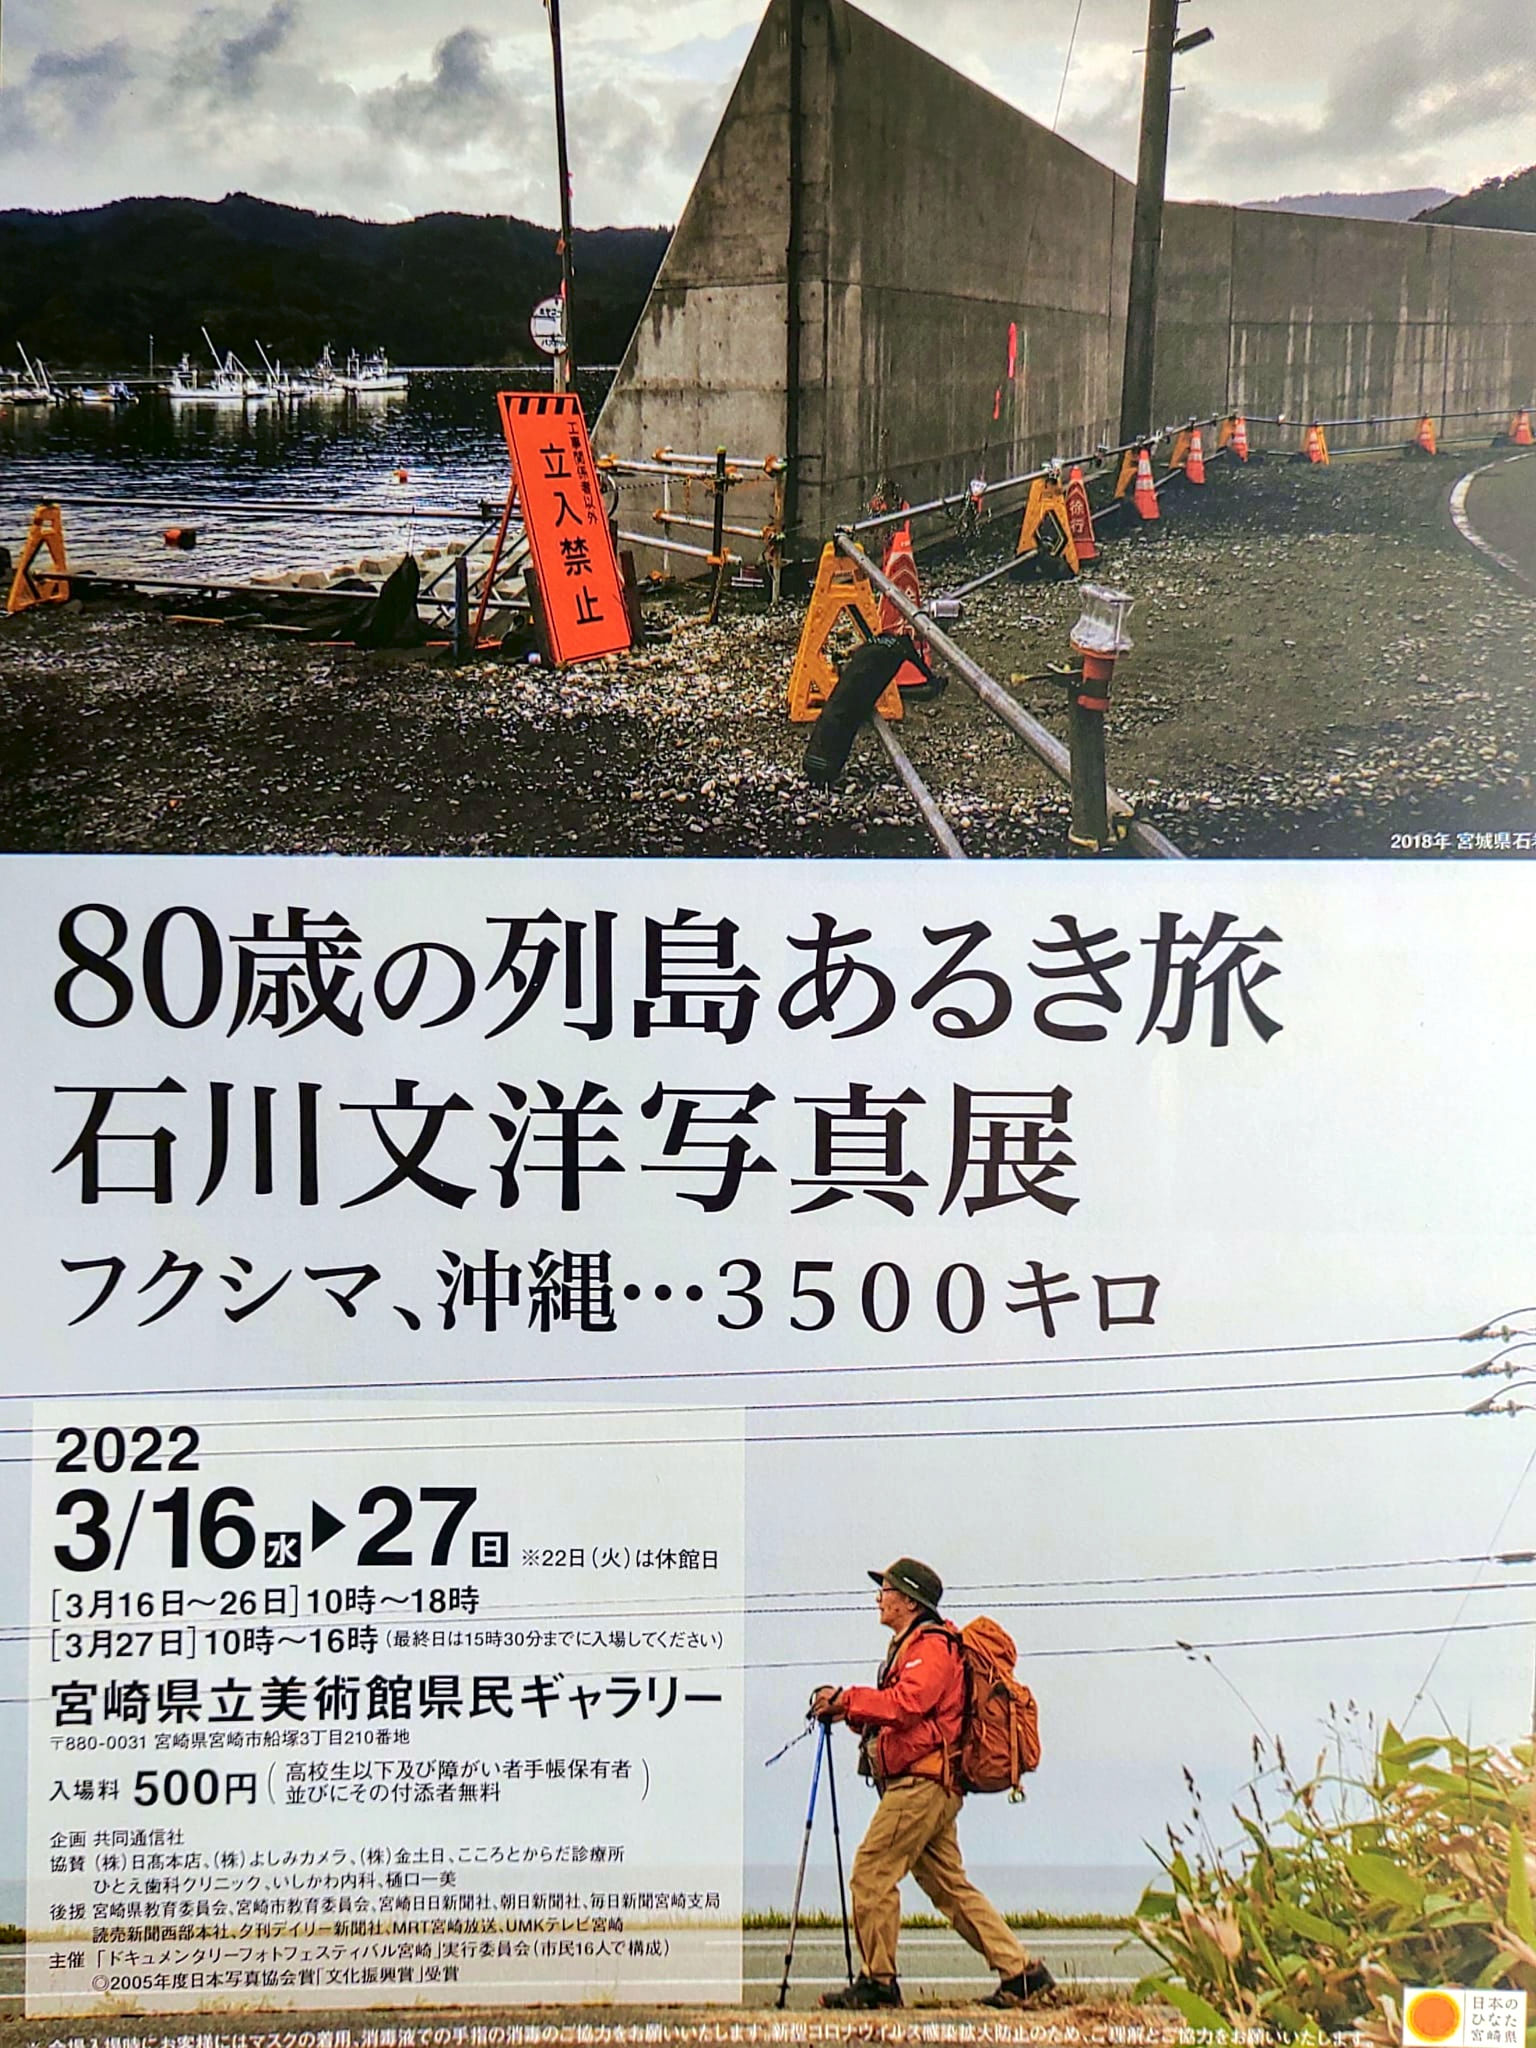 80歳の列島あるき旅「石川文洋写真展」フクシマ、沖縄…3500キロ